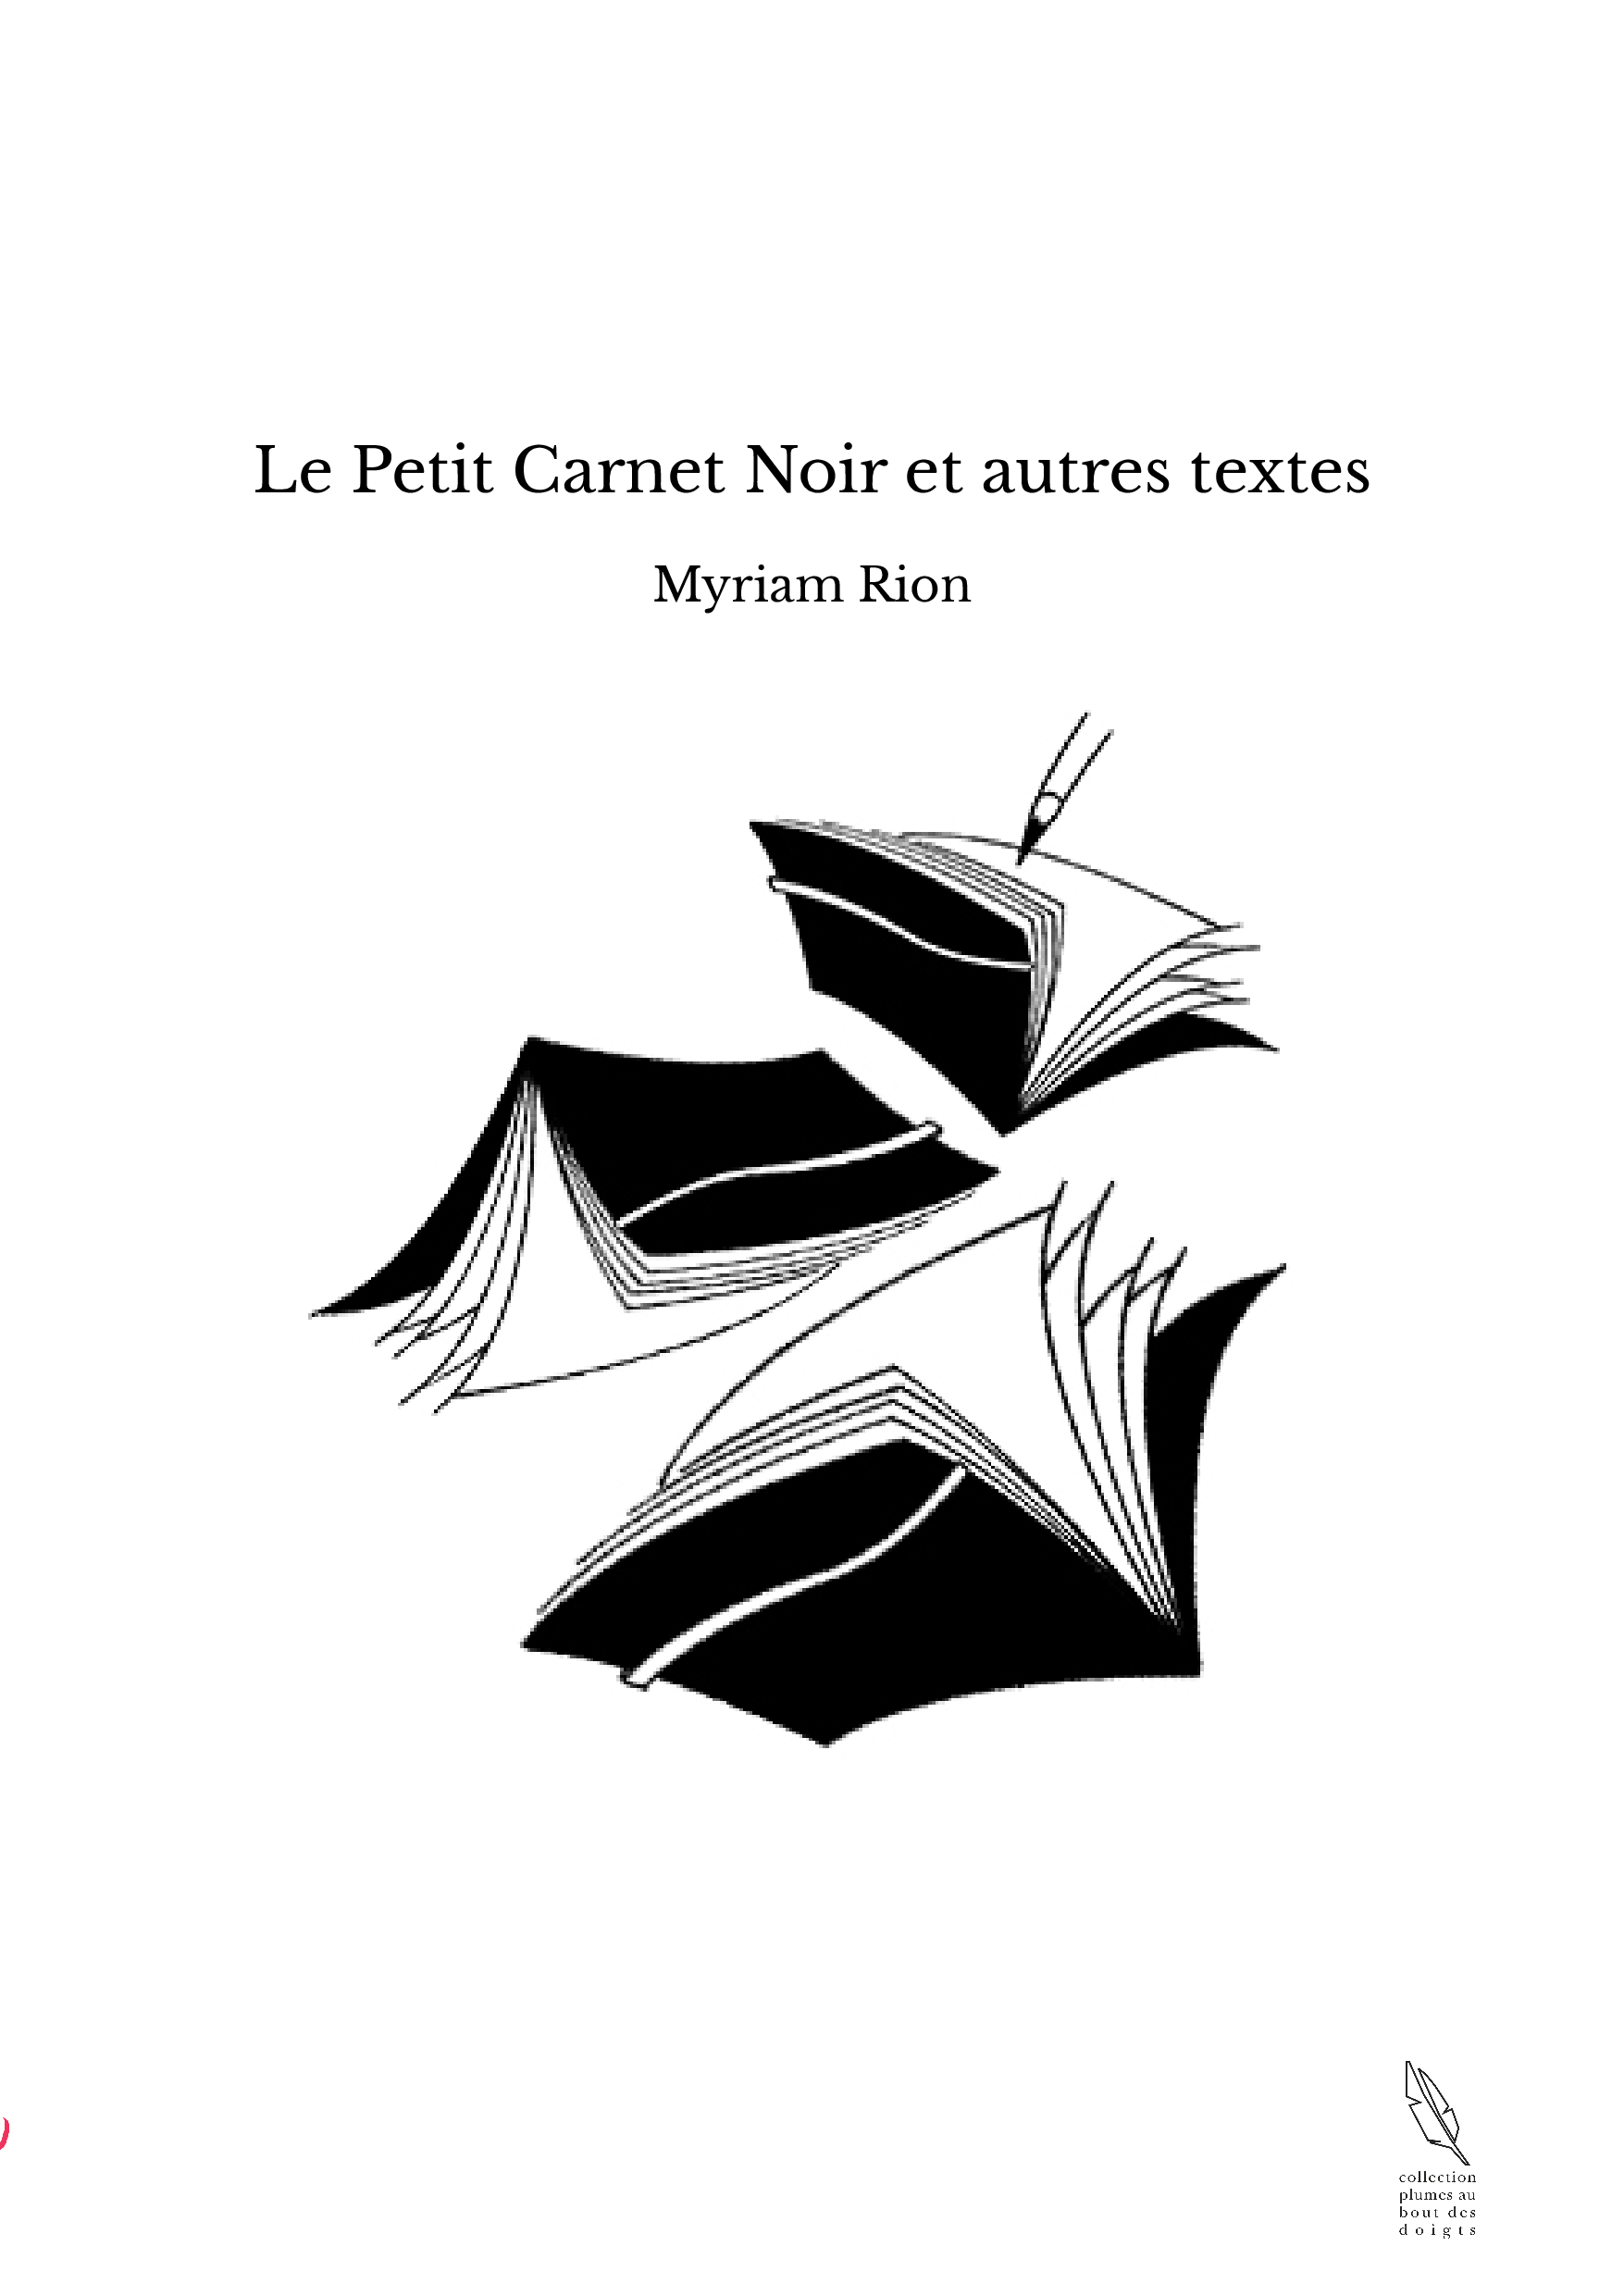 Le Petit Carnet Noir et autres textes